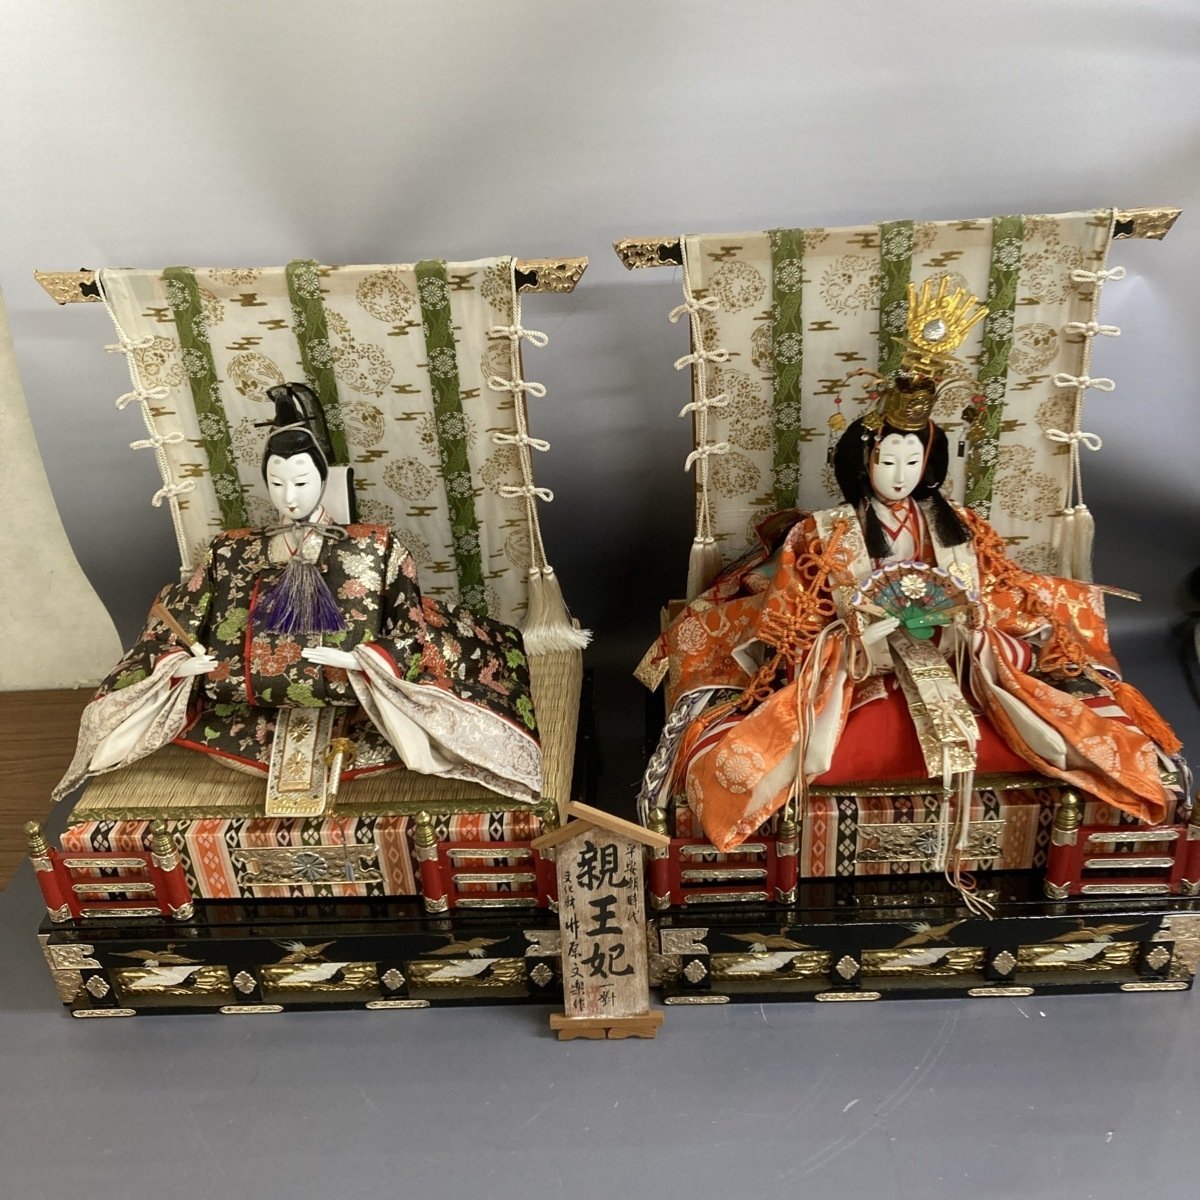 f001 F Nur Abholung Takehara Bunraku Arbeit Heian-Zeit Prinz und Prinzessin Paar Hina Puppen, Jahreszeit, Jährliche Veranstaltungen, Puppenfest, Hina-Puppen